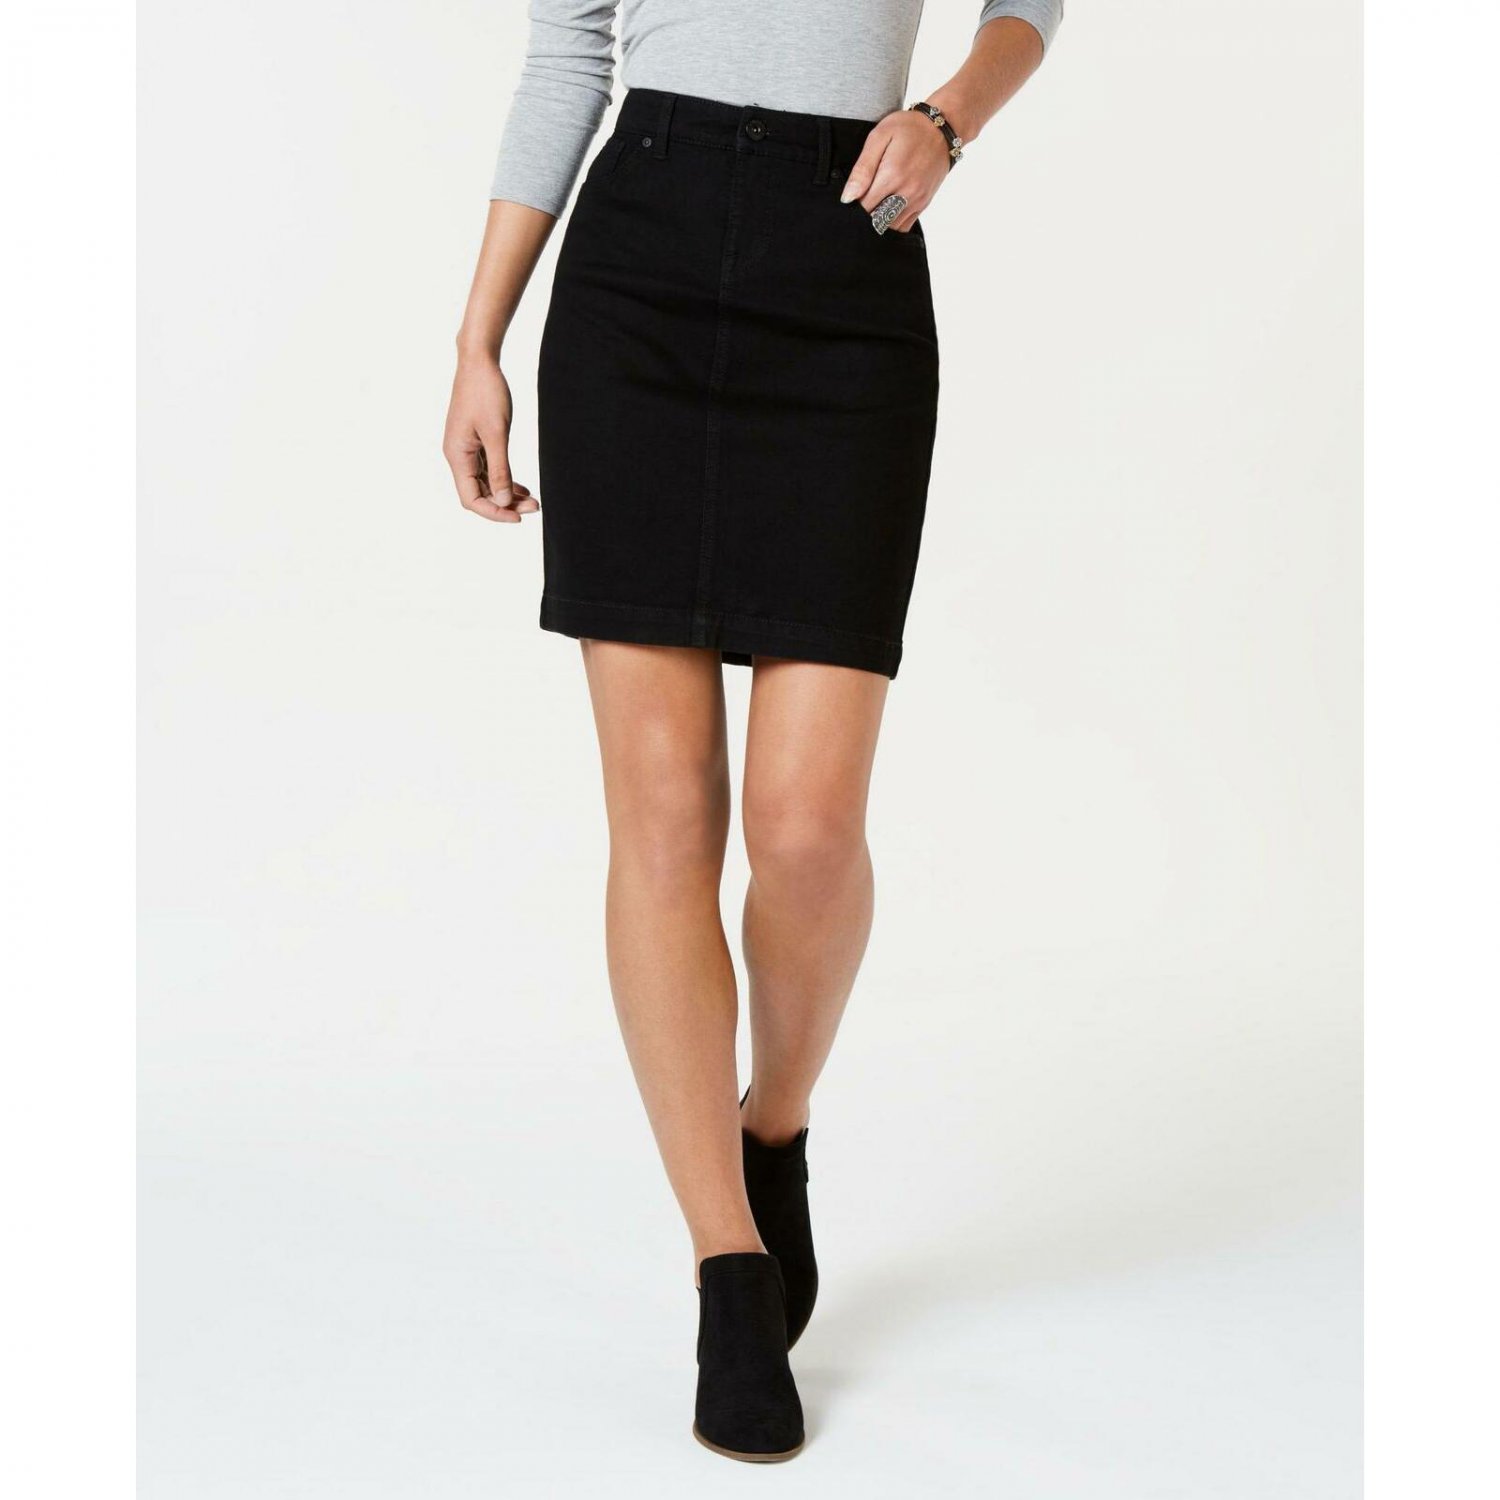 Style & Co Women's Basic Denim Skirt 12 Black Rinse